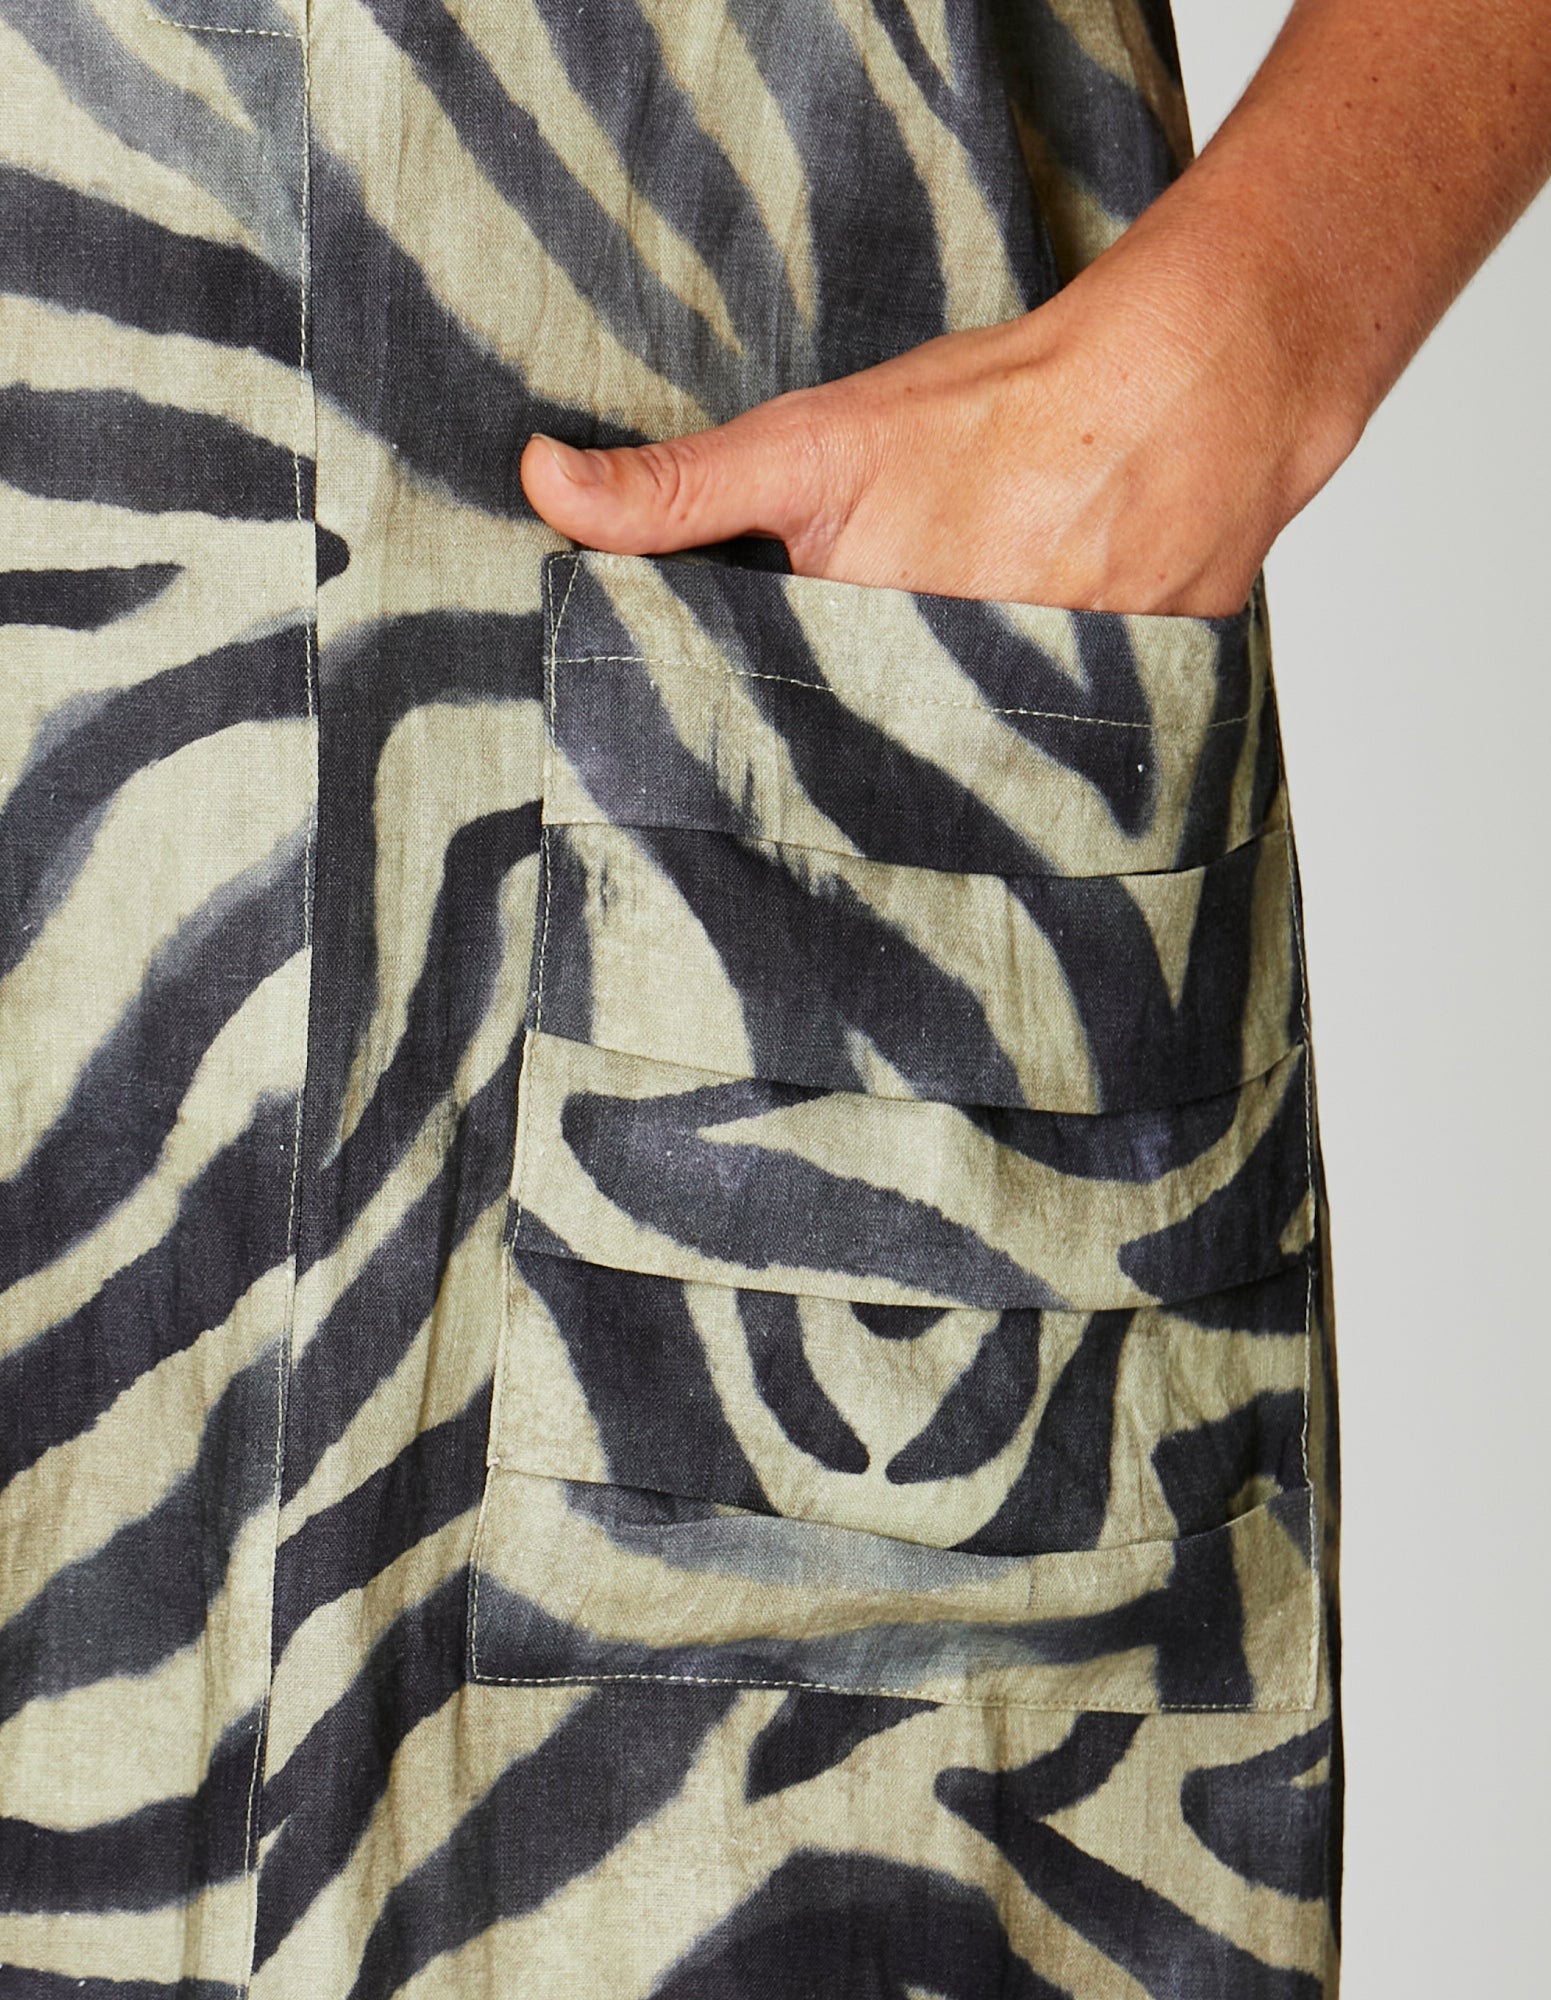 Drop Shoulder Zebra Ikat Print Dress